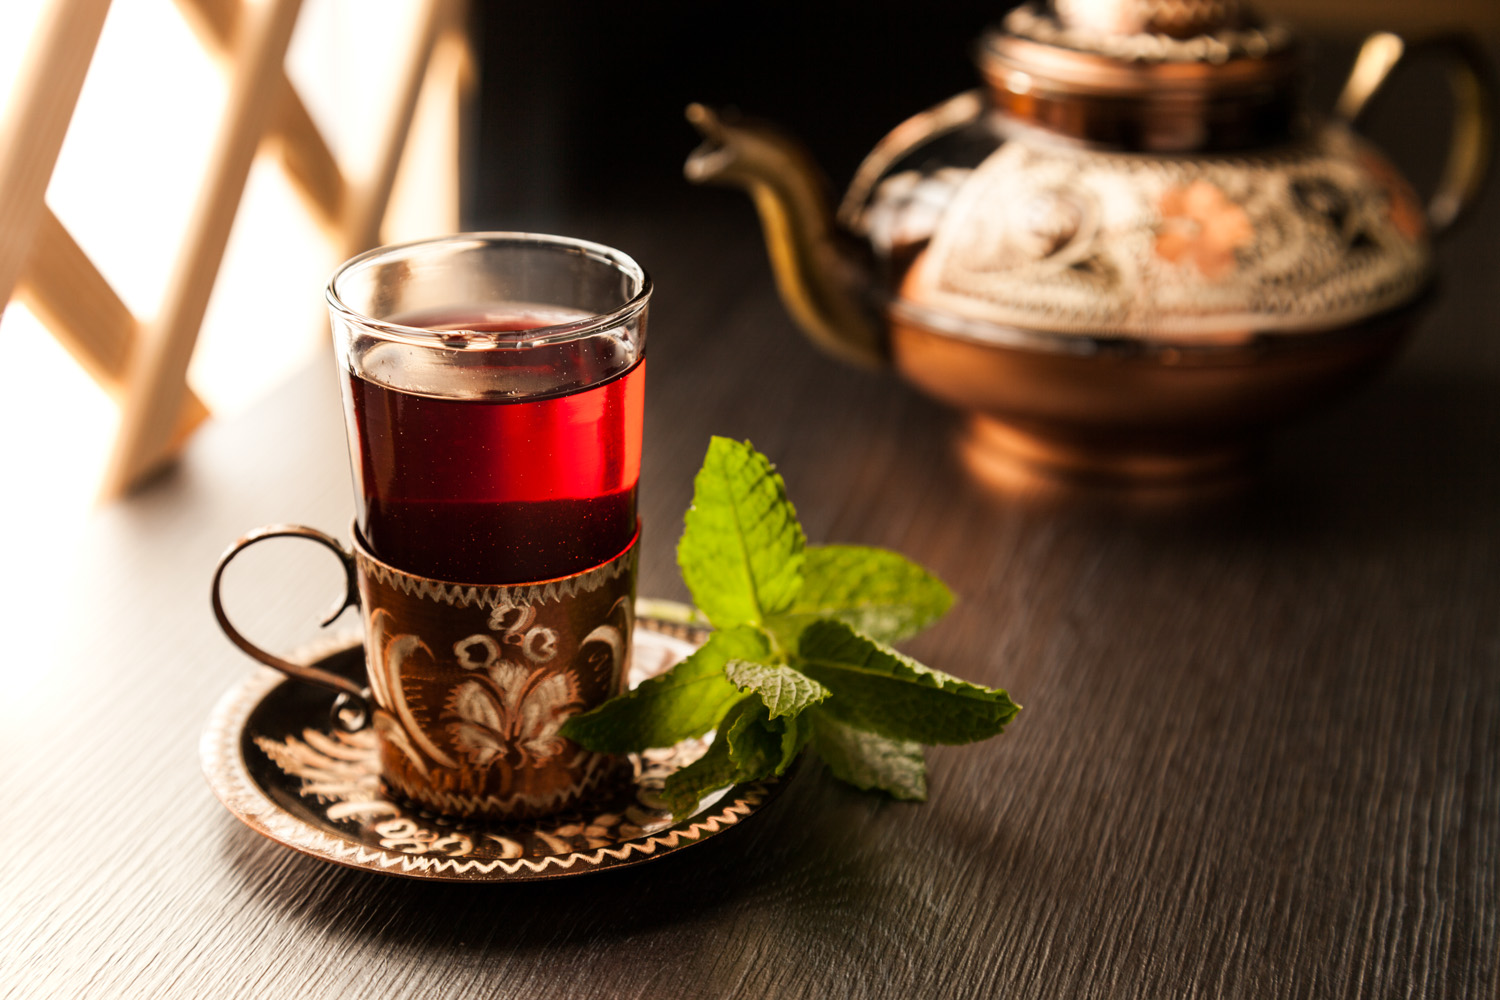 Produktfotografie/Werbefotografie einer Teetasse aus Glas im türkischen Stil.